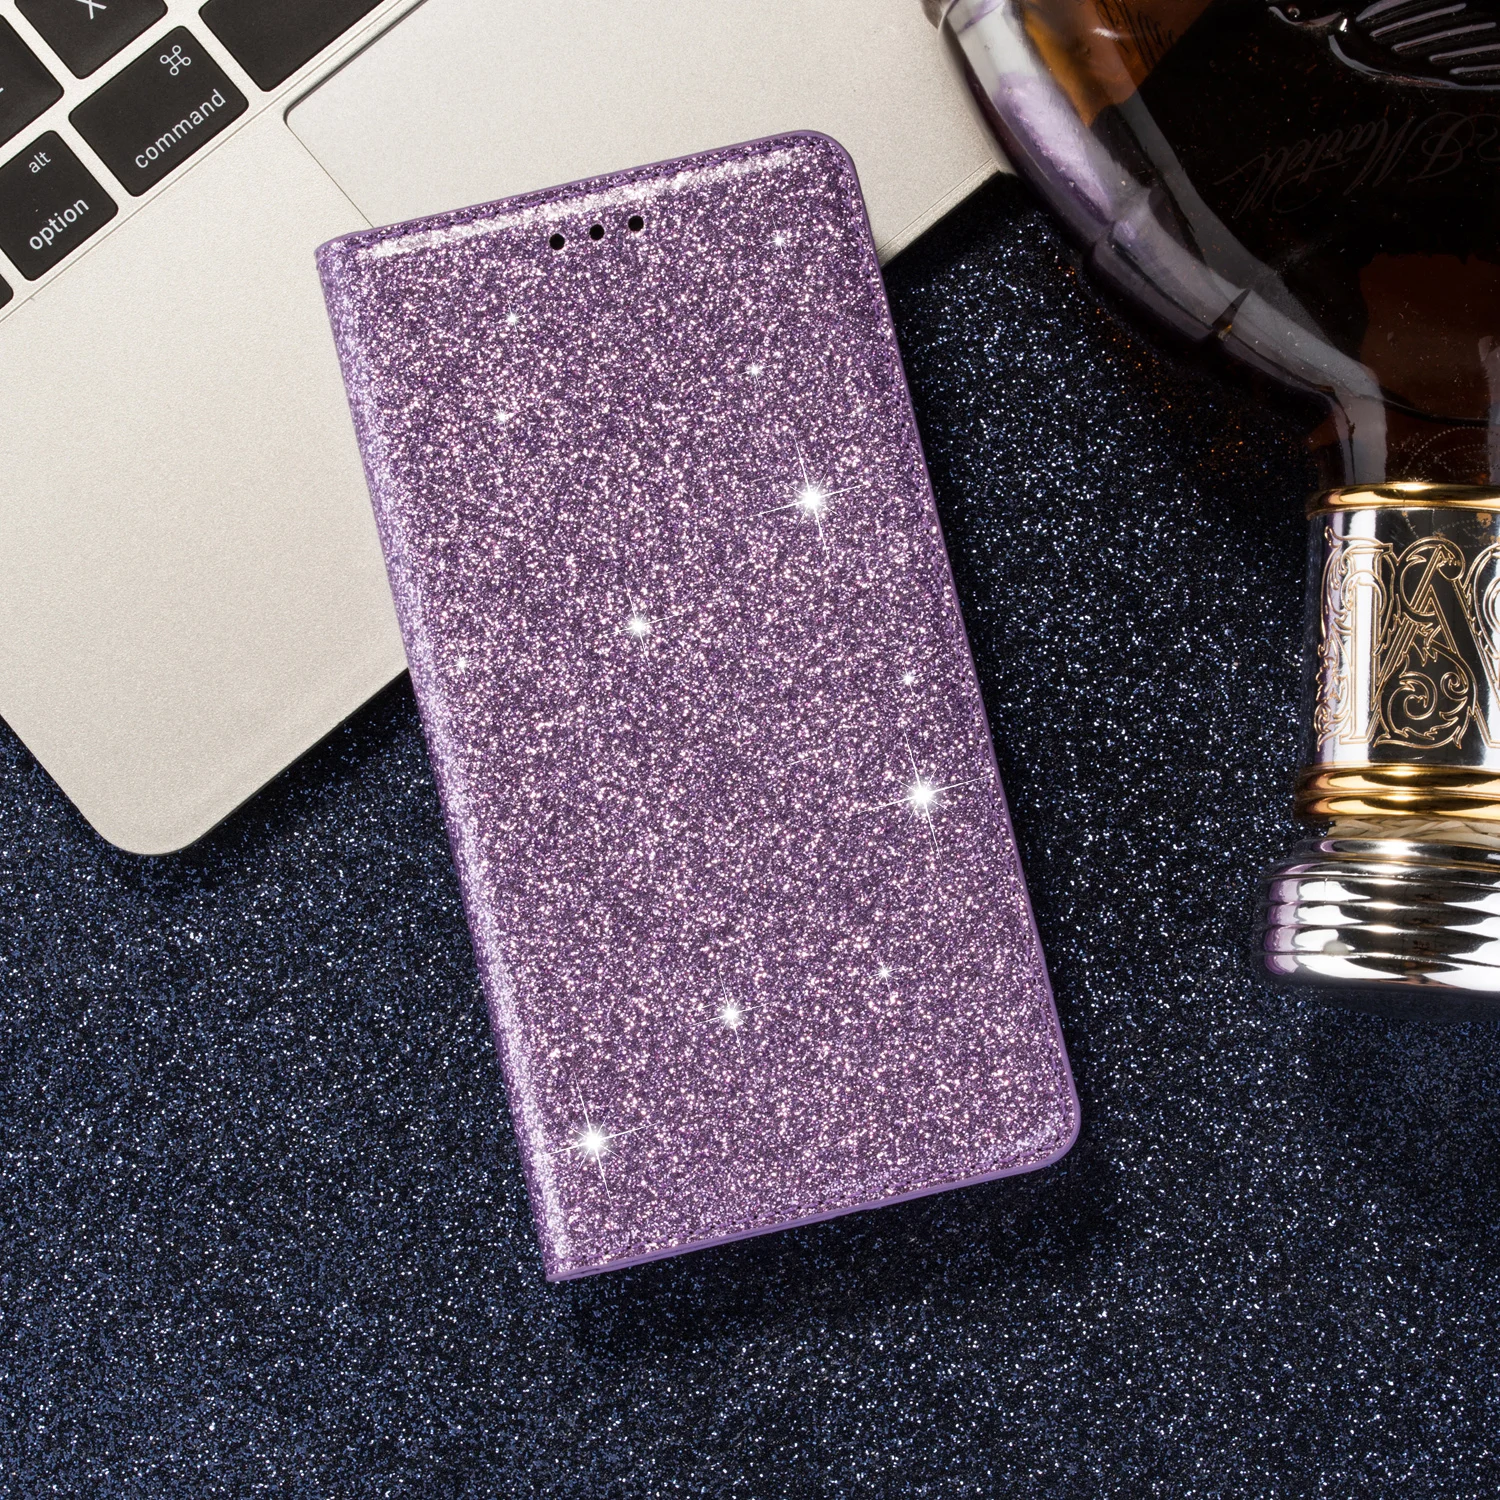 Блестящий чехол для samsung Galaxy J4 J4 Plus J6 Plus J330 J5 Pro J730 J8 блестящий кожаный флип-бумажник с подставкой для карт - Цвет: Purple